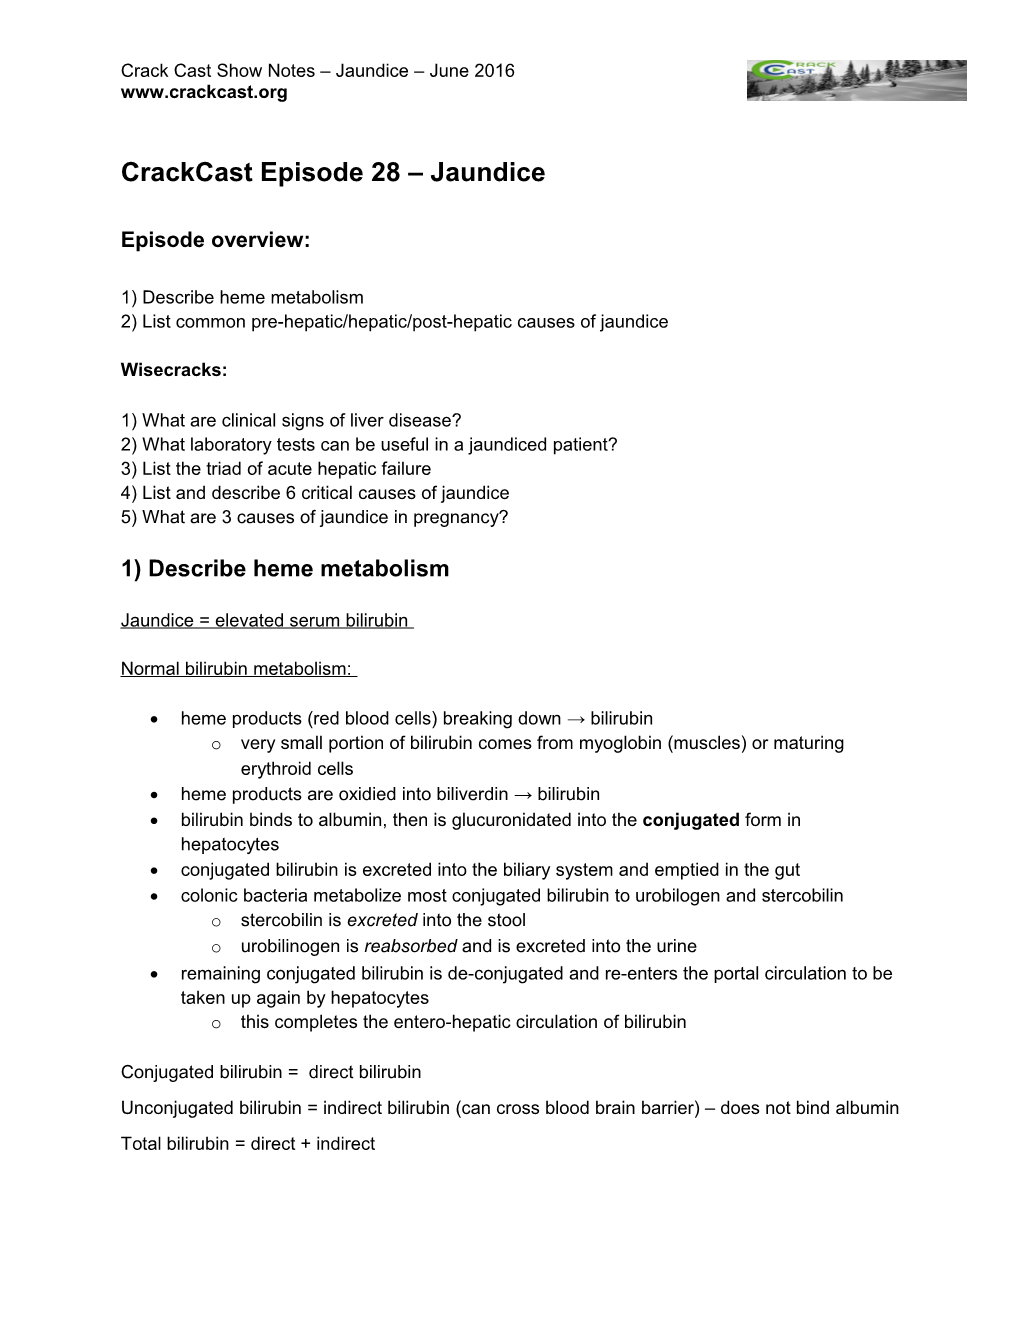 Crackcast Episode 28 Jaundice